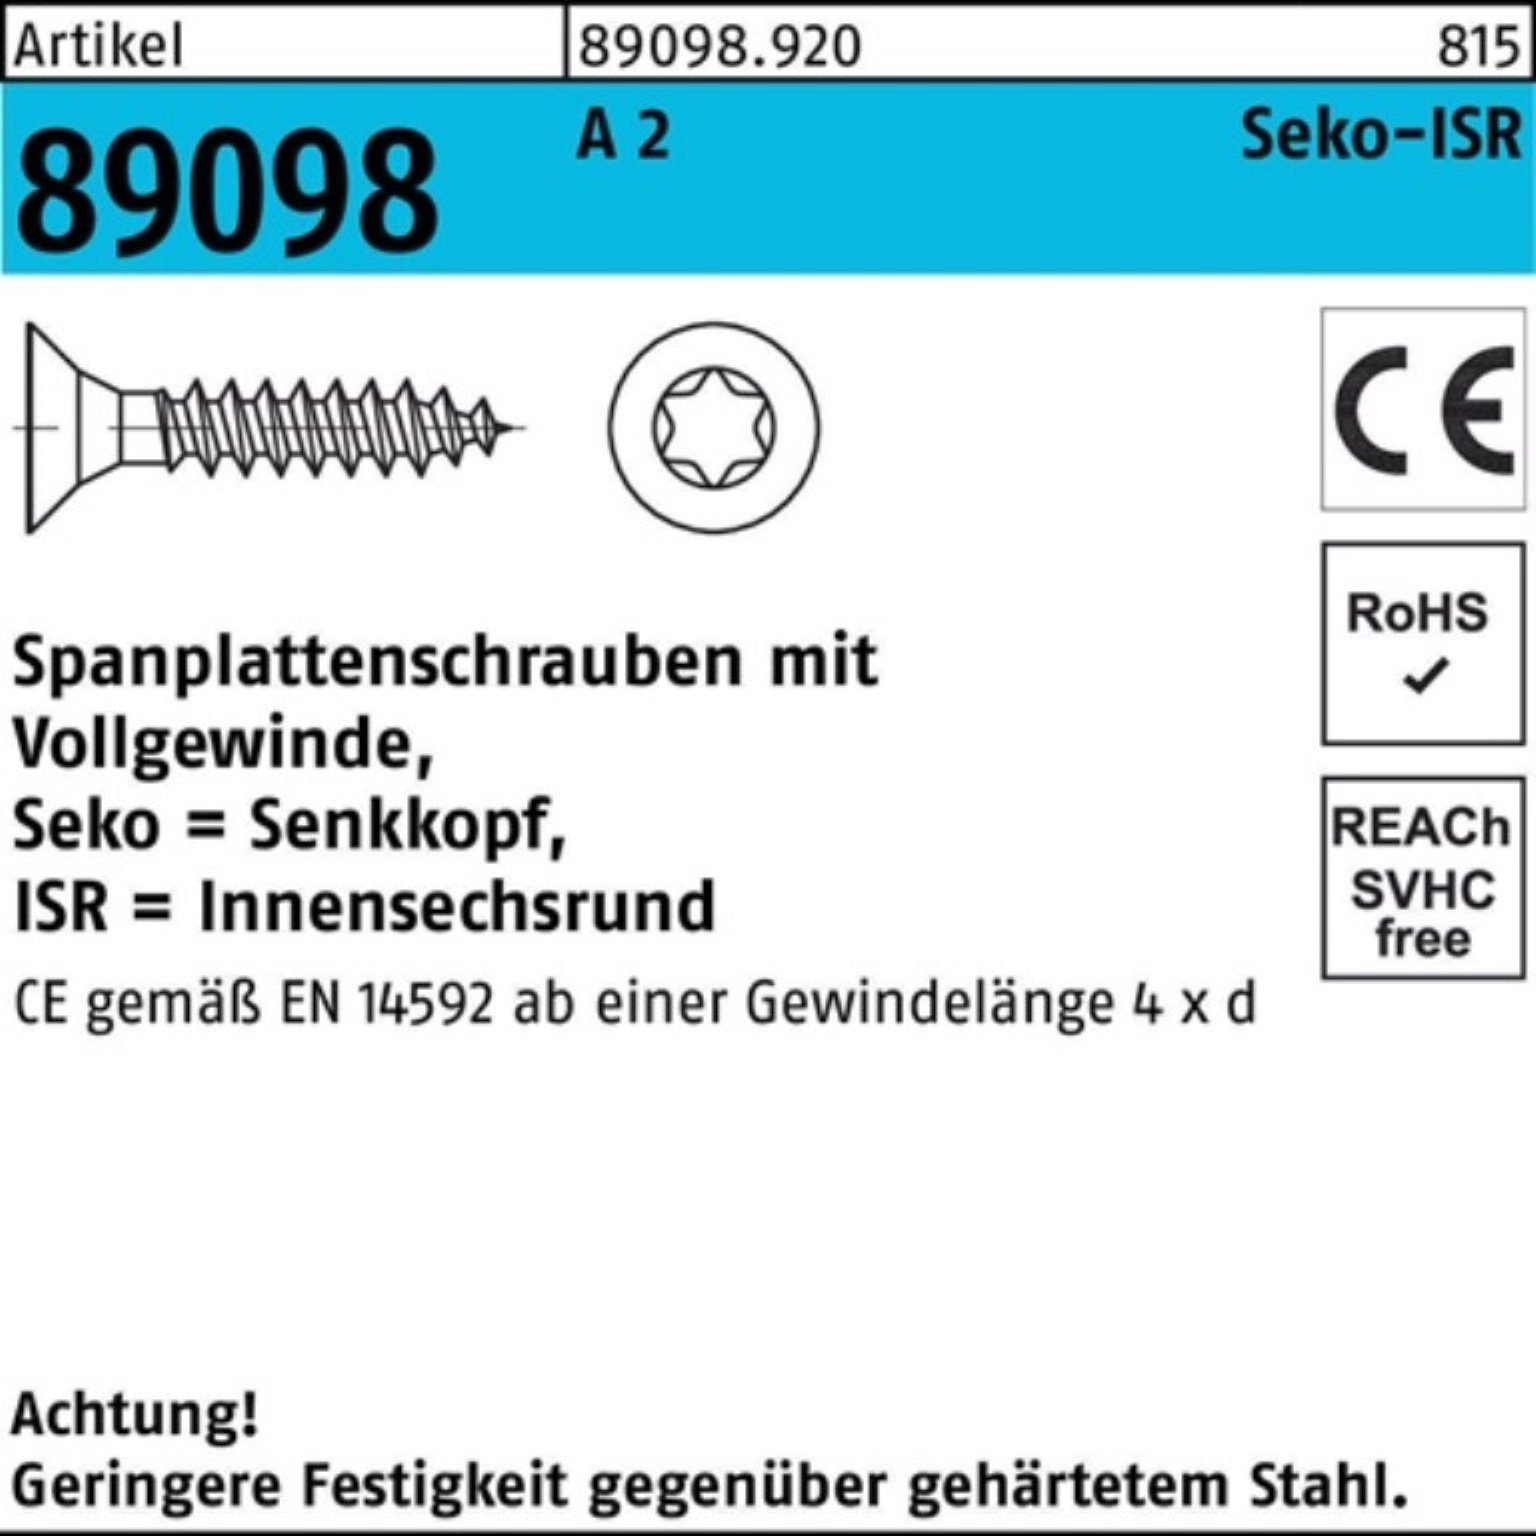 Spanplattenschraube Reyher SEKO R Spanplattenschraube A Pack 89098 5x 2 ISR 1000er VG 25-T25 1000